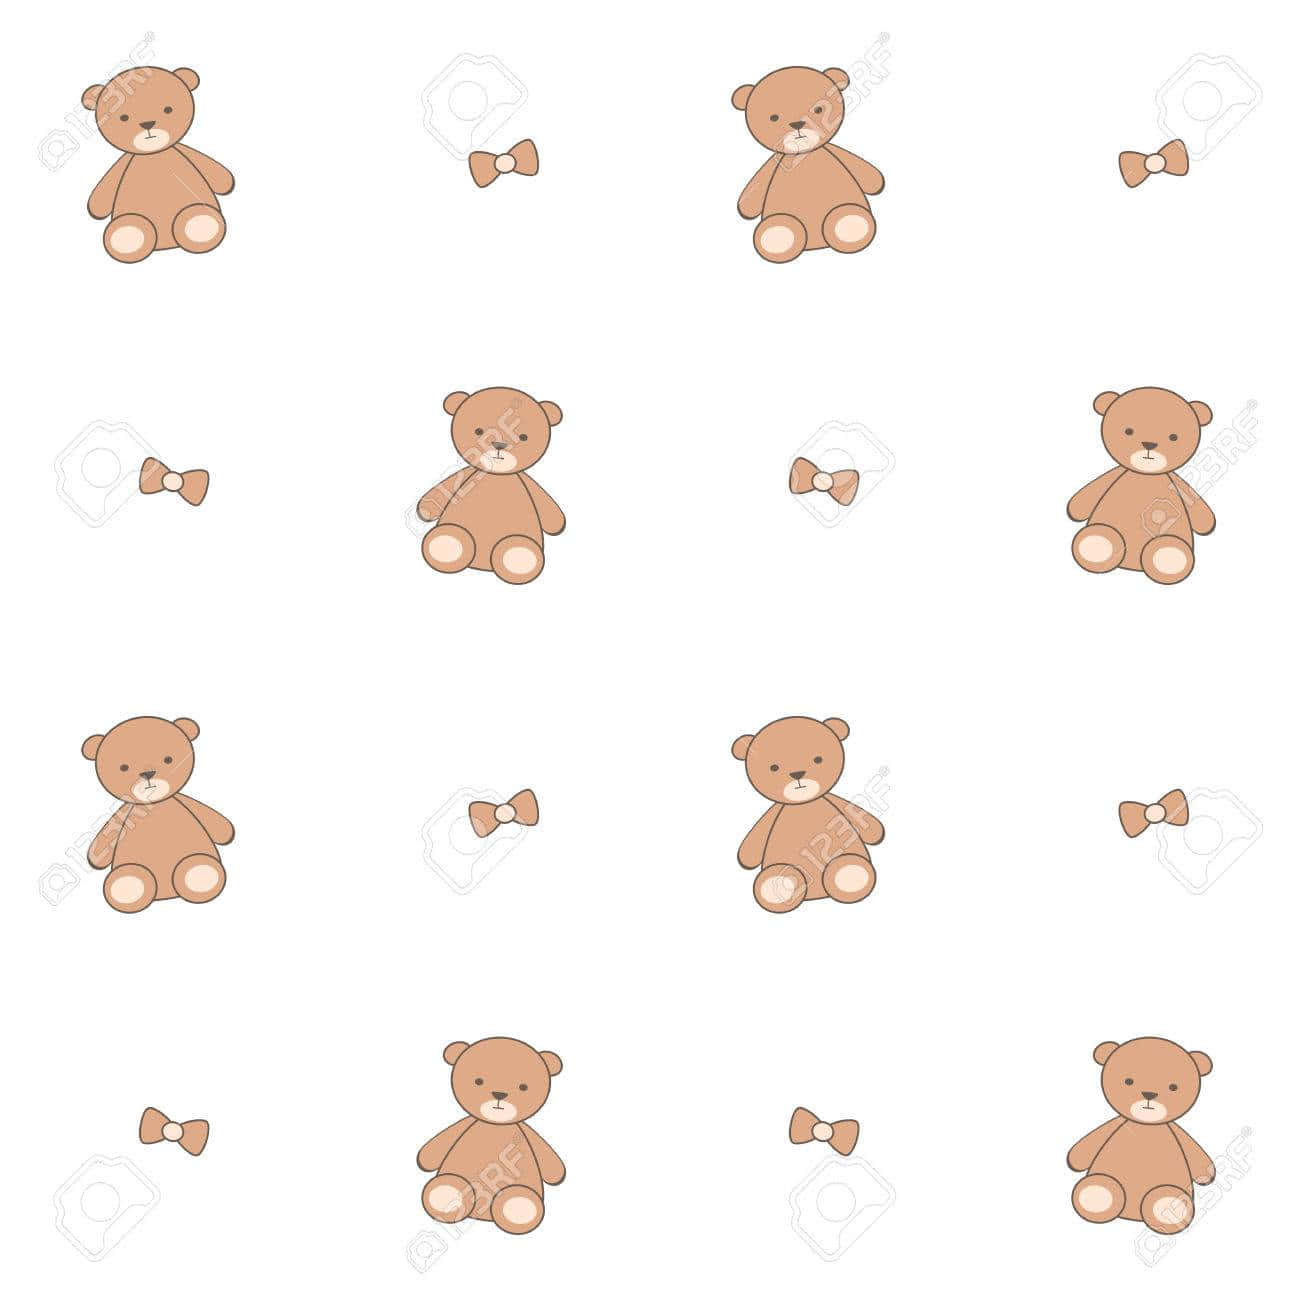 Soft and Cuddly Teddy Bear